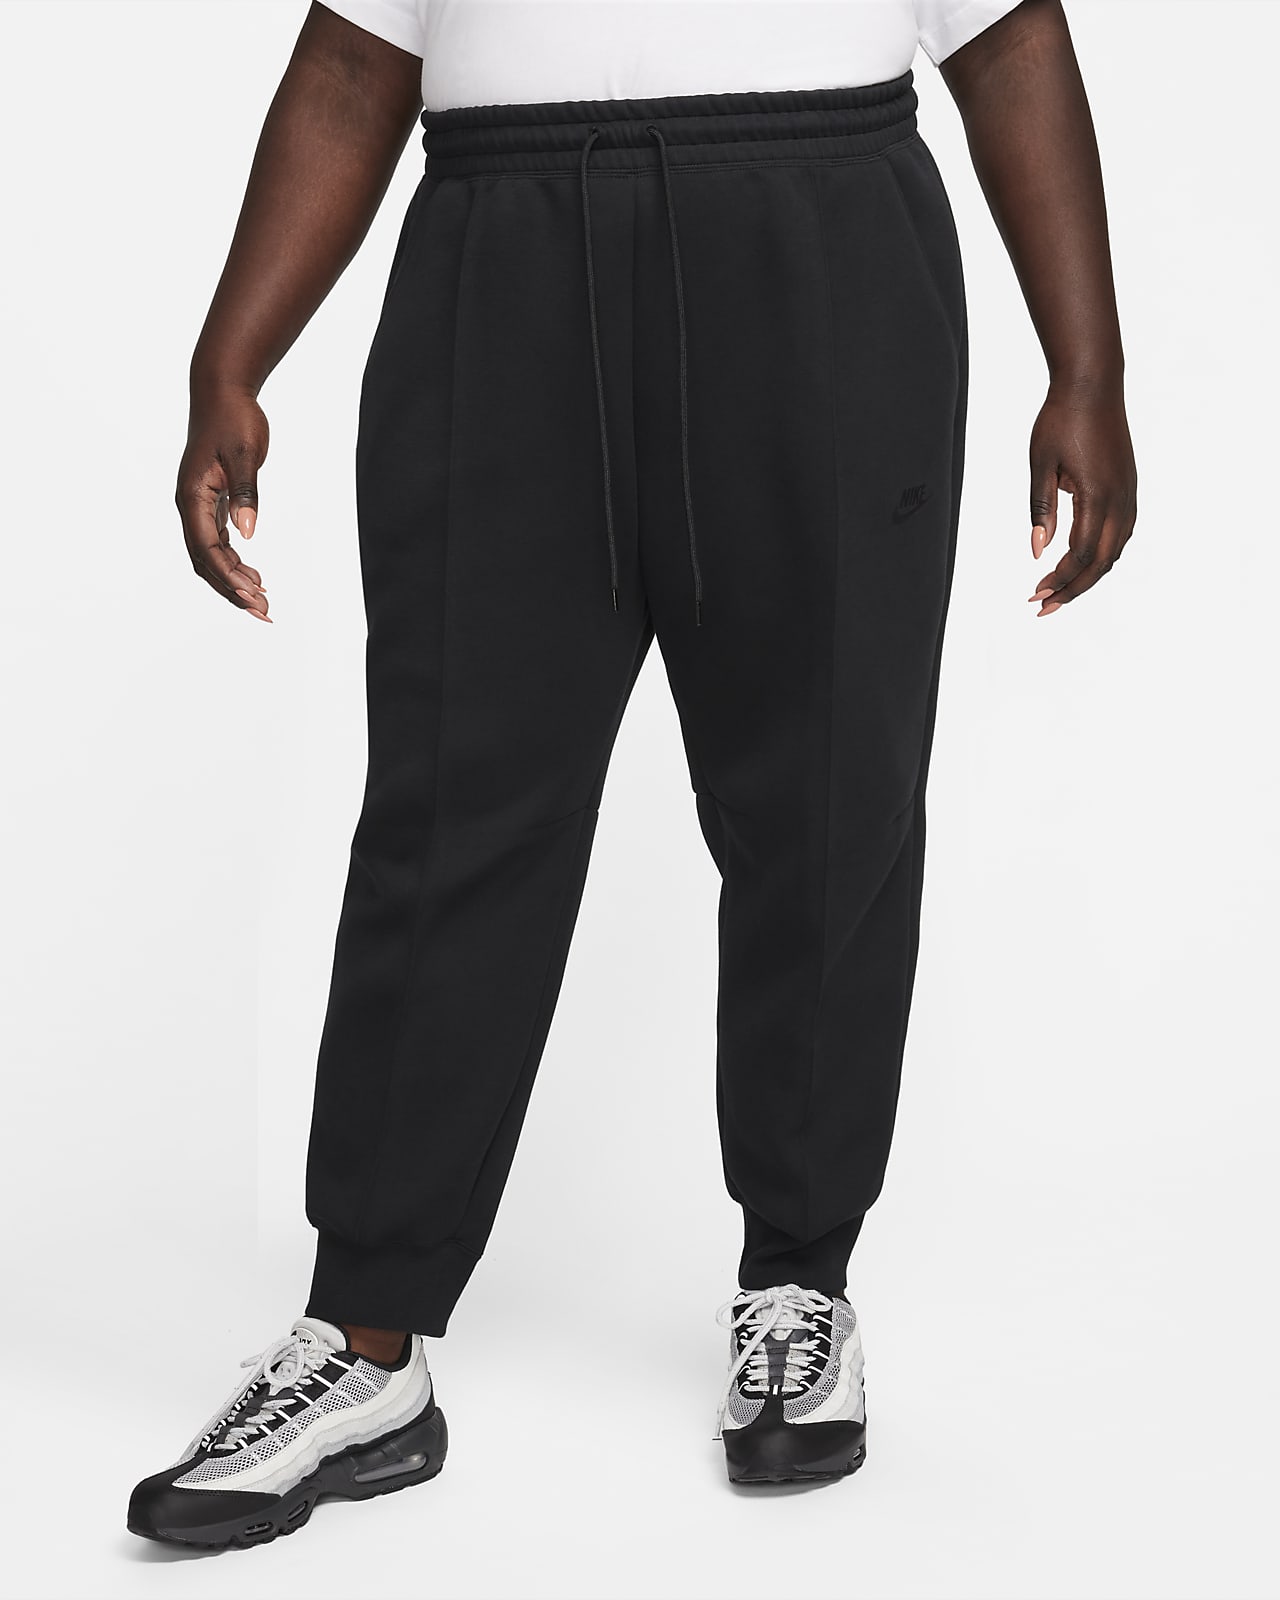 Dámské běžecké kalhoty Nike Sportswear Tech Fleece se středně vysokým pasem (větší velikost)